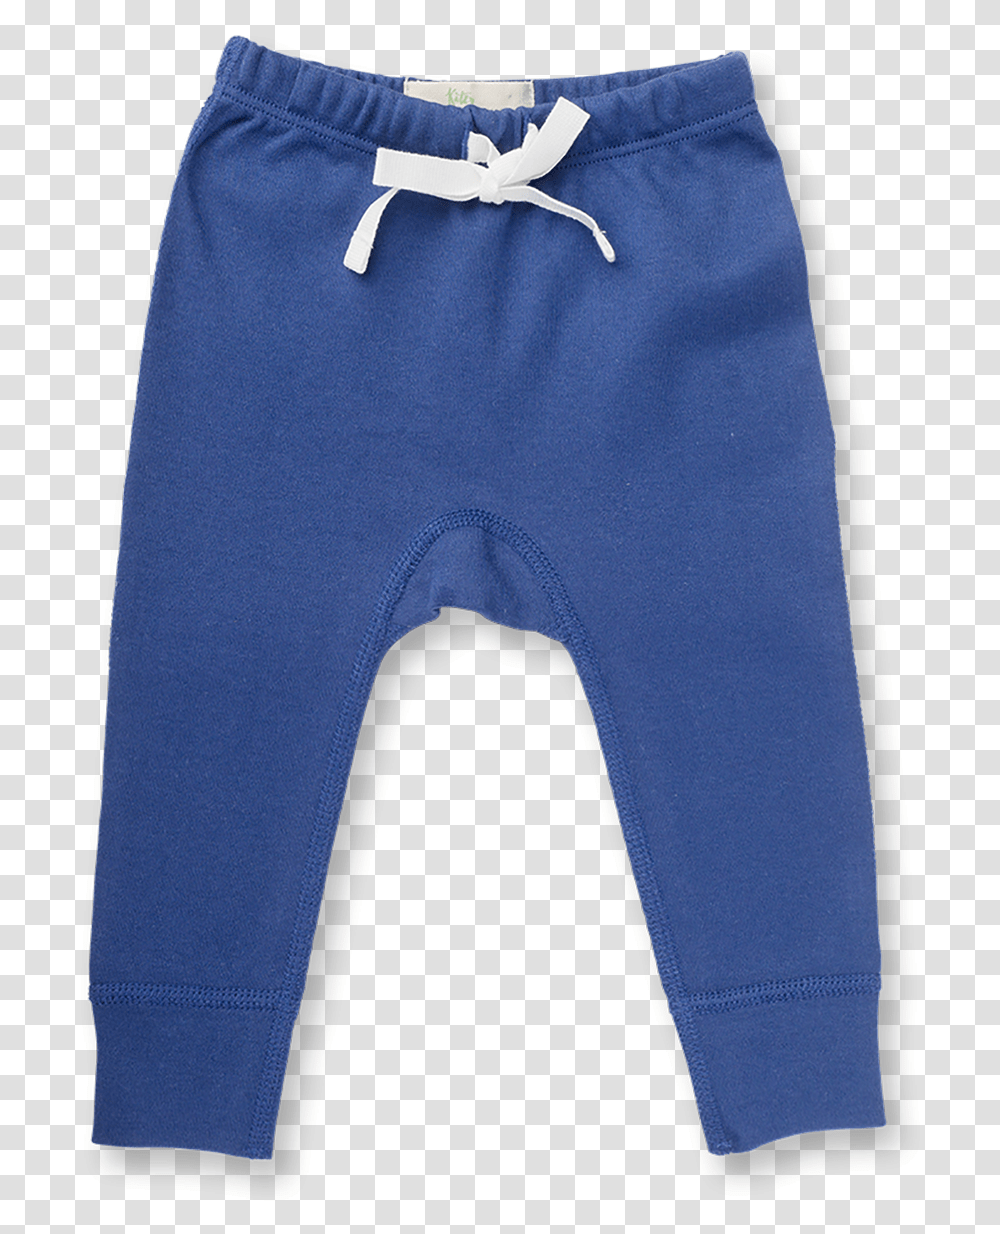 Trousers Child, Pants, Apparel, Jeans Transparent Png